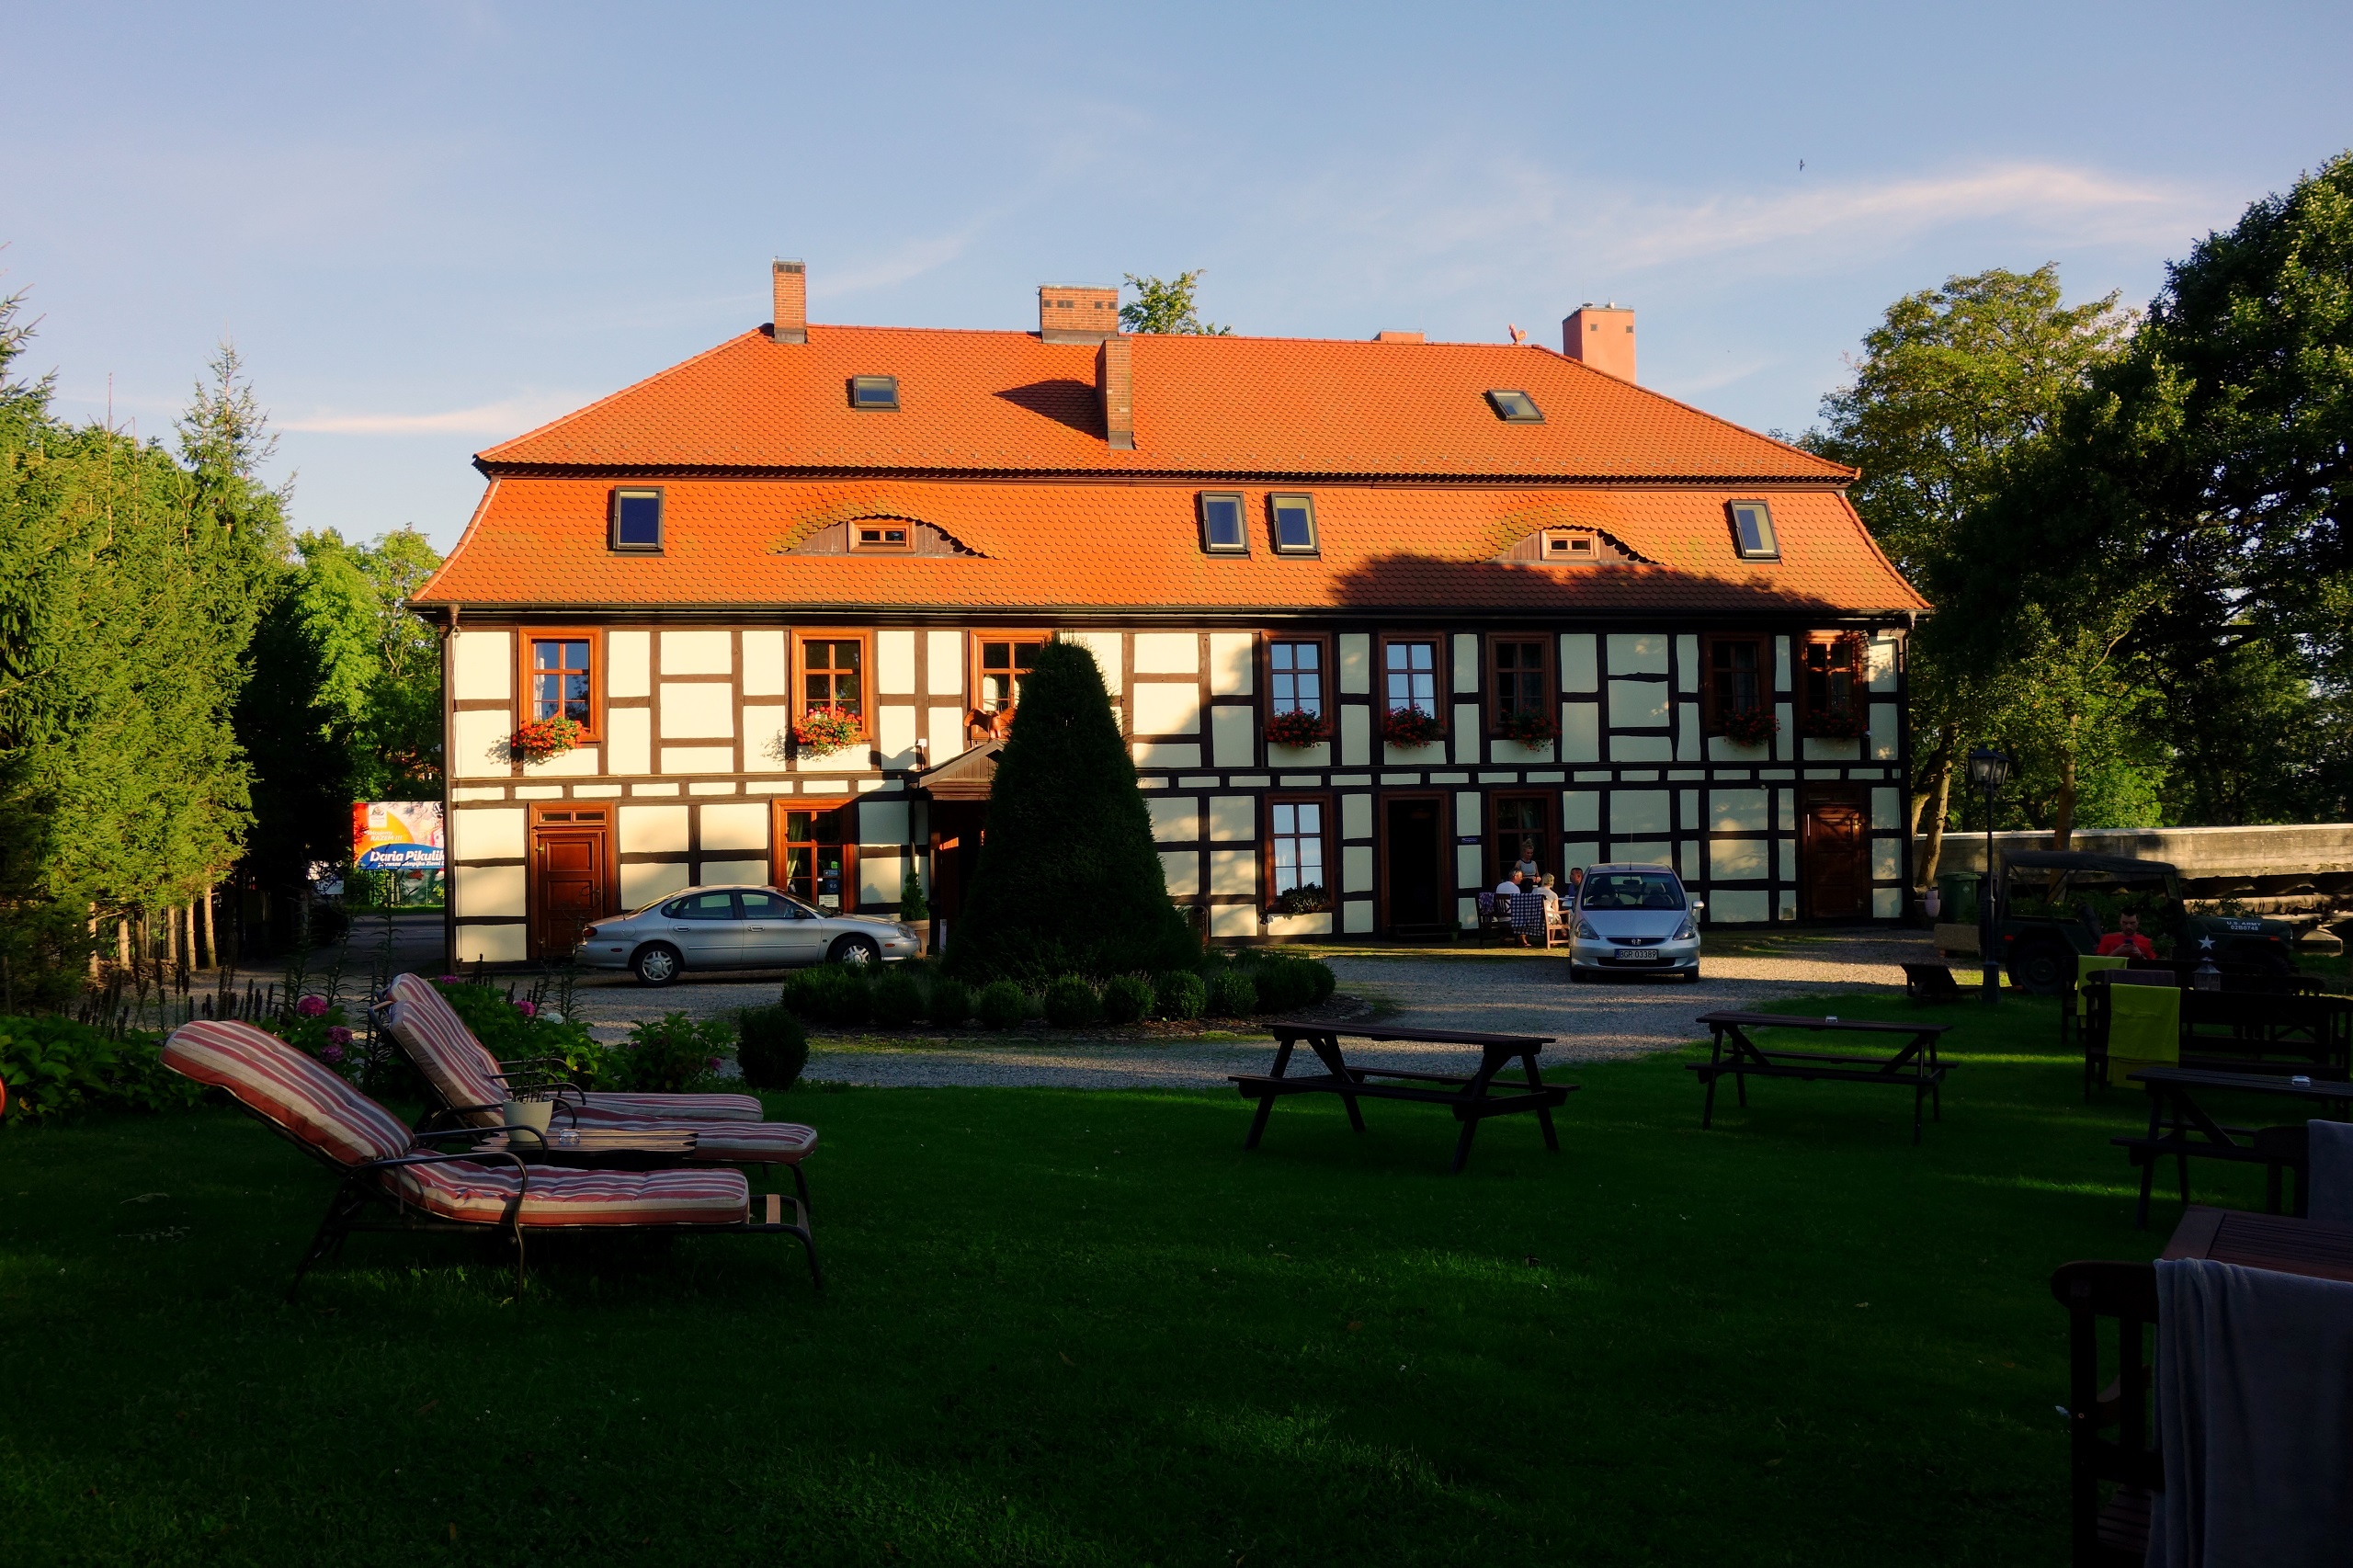 Gościniec Zamkowy - hotel historyczny